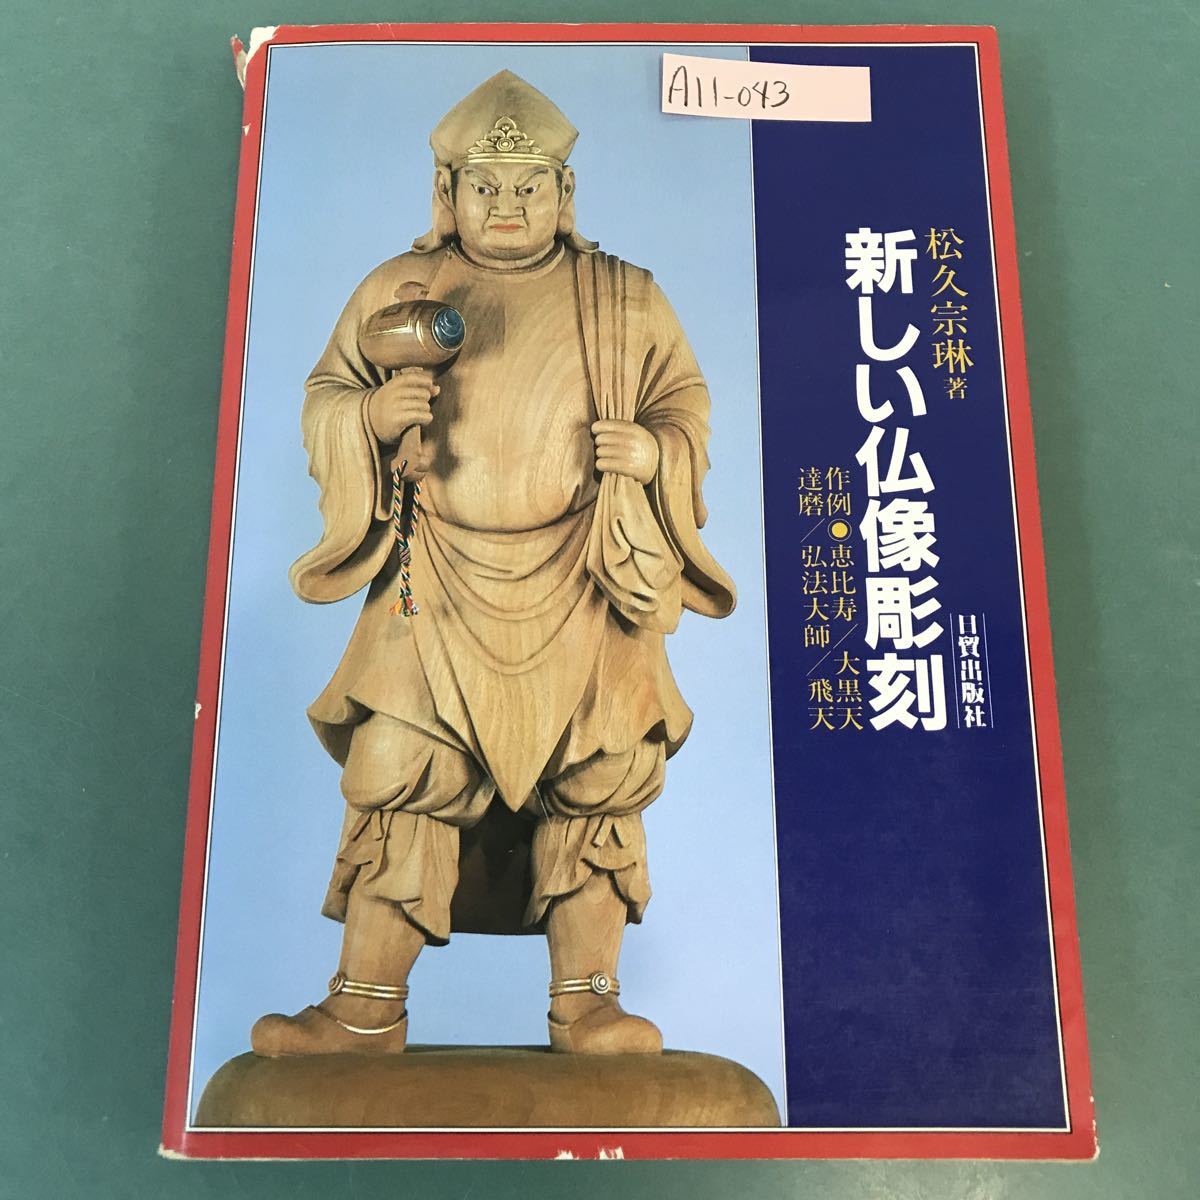 A11-043 Matsuhisa Matsuhisa's New Buddha Sculpture Пример Ebisu/Tatsuma Oguroten/Kobo Daishi/Hiroten Nissho Trading Company